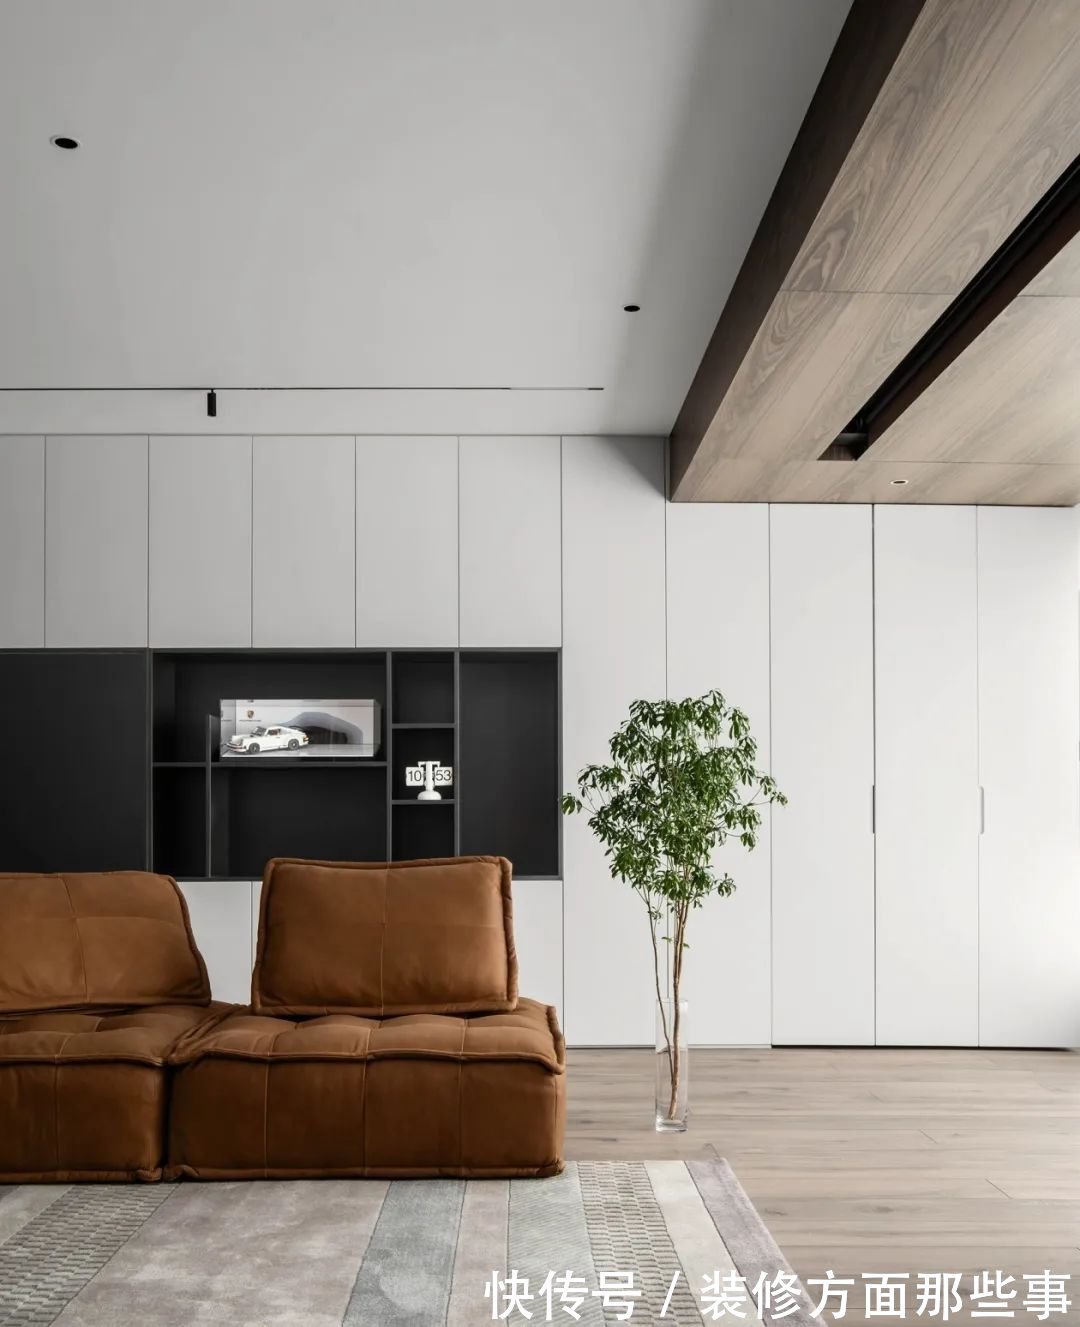 现代|三室两厅现代简约风格，木色与白色相搭配营造美感